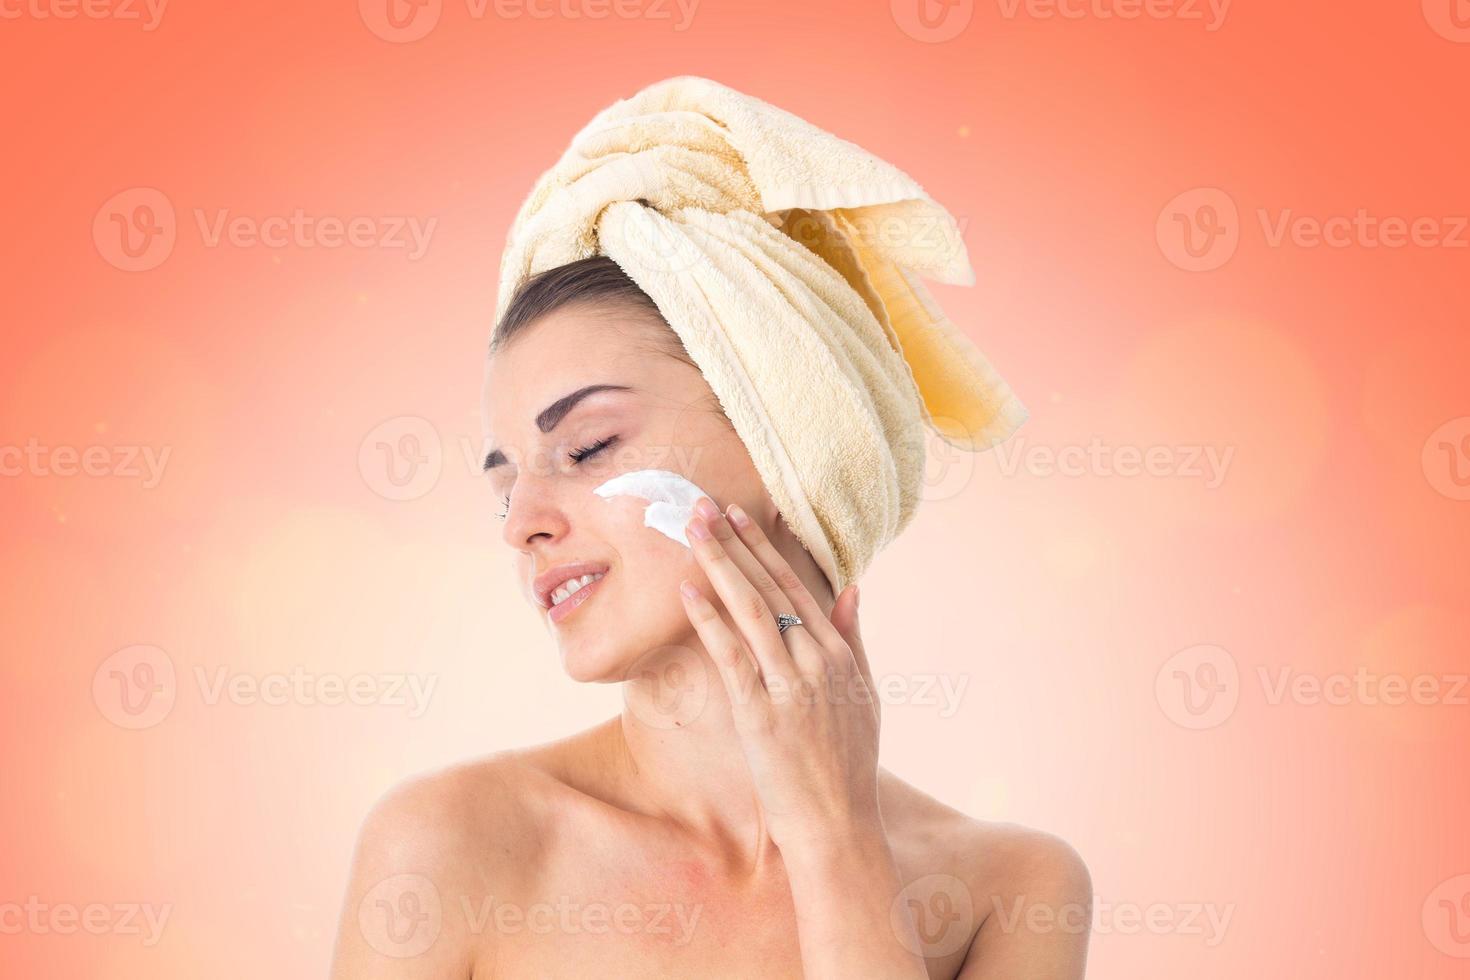 la joven cuida su piel. foto